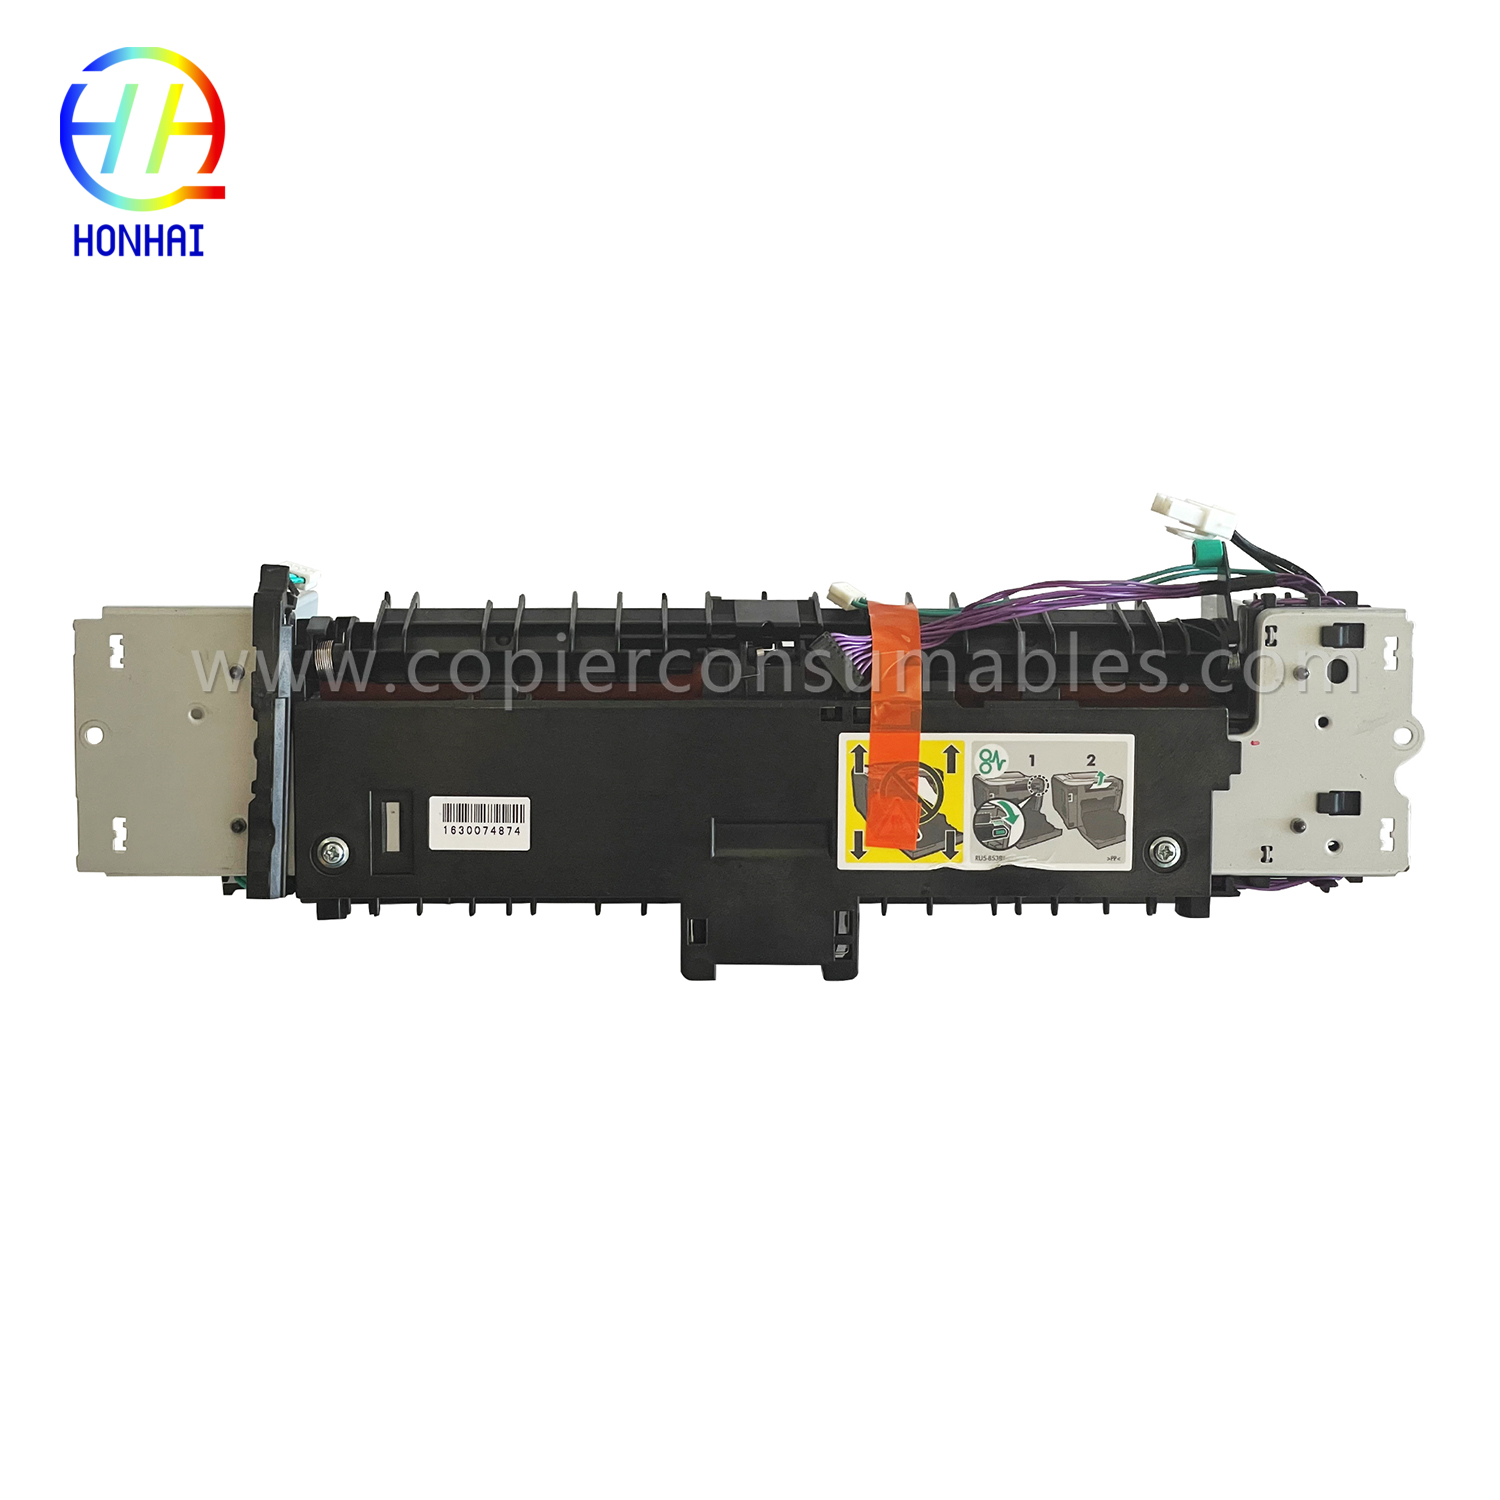 Fuserenhet for HP Laserjet PRO 400 Color Mfp M475dn M475dw (RM2-5478-000)